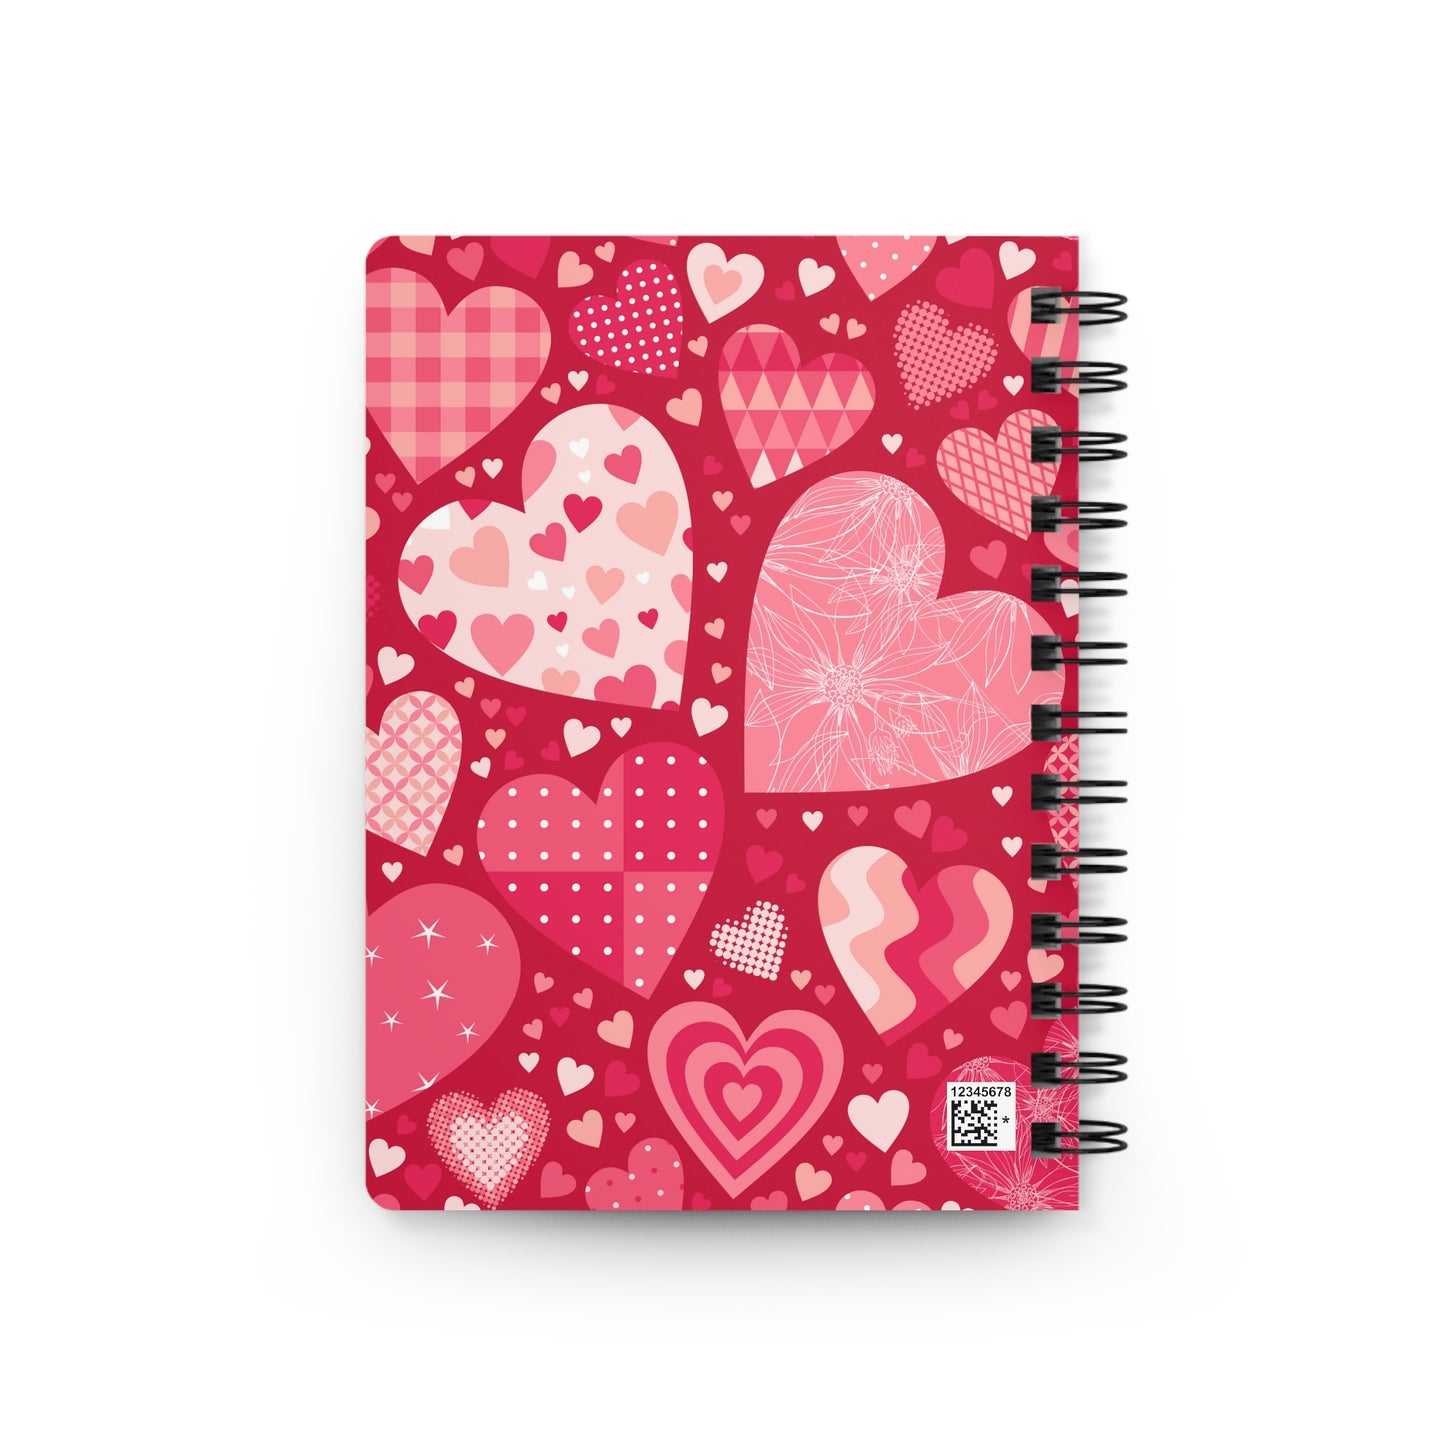 Blissful Hearts Spiral Bound Journal